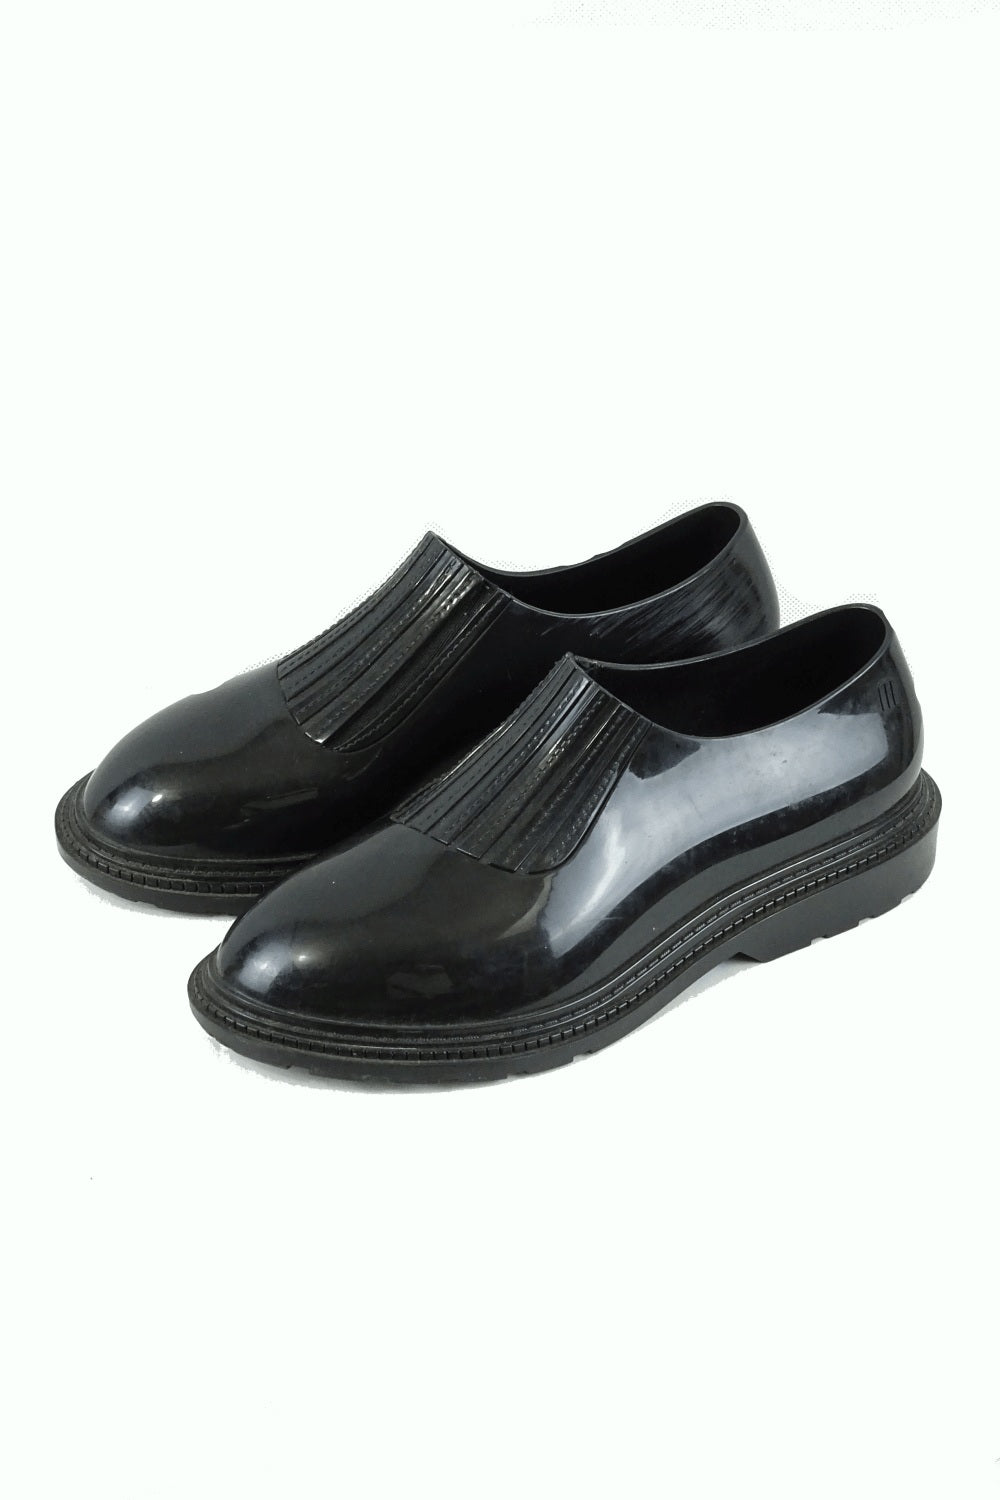 Melissa Black Shoes 6